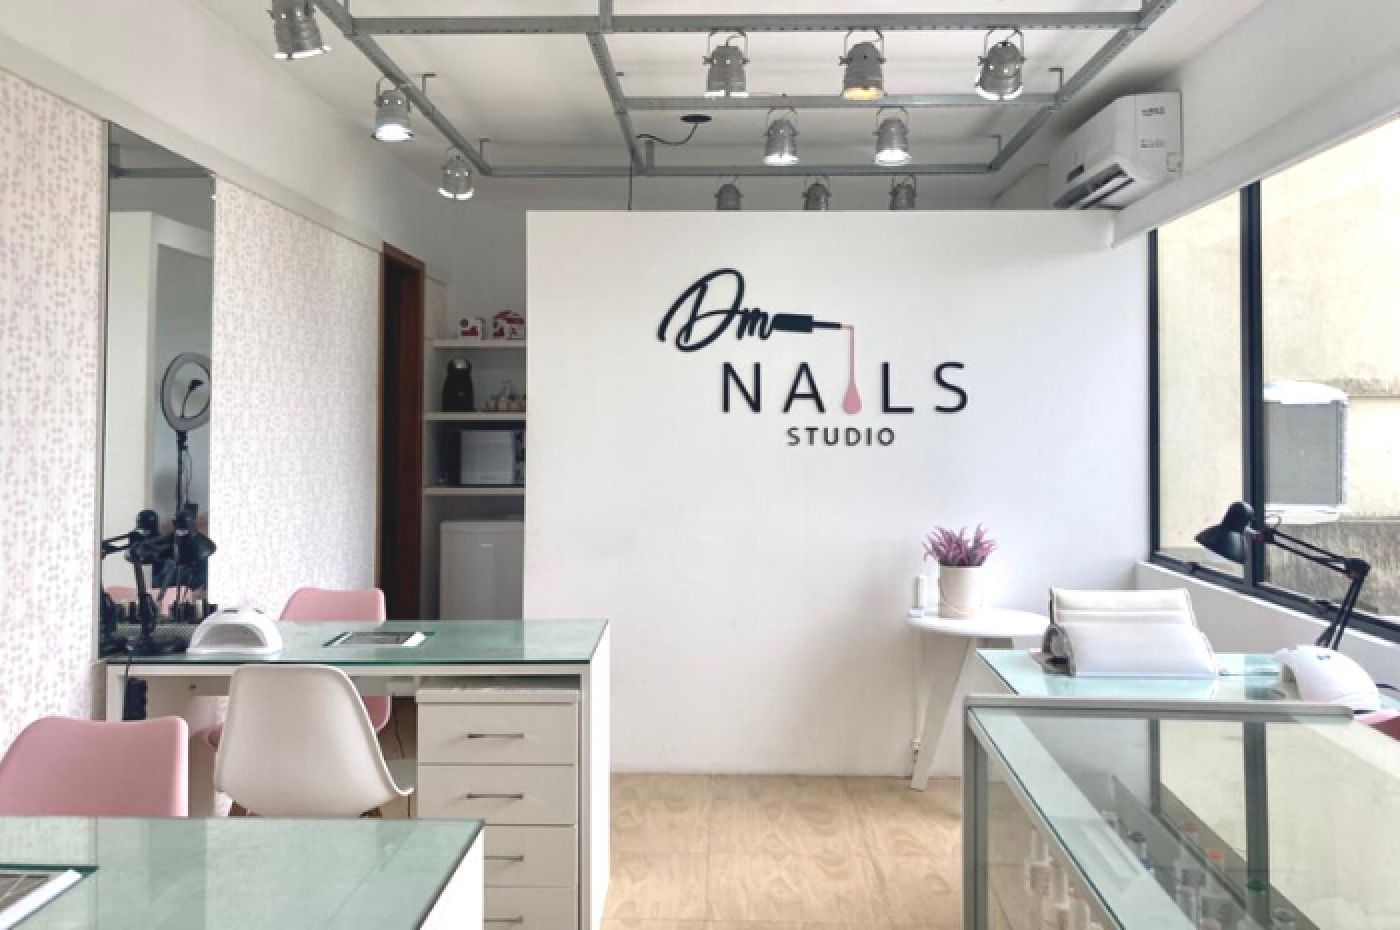 DM Nails Studio